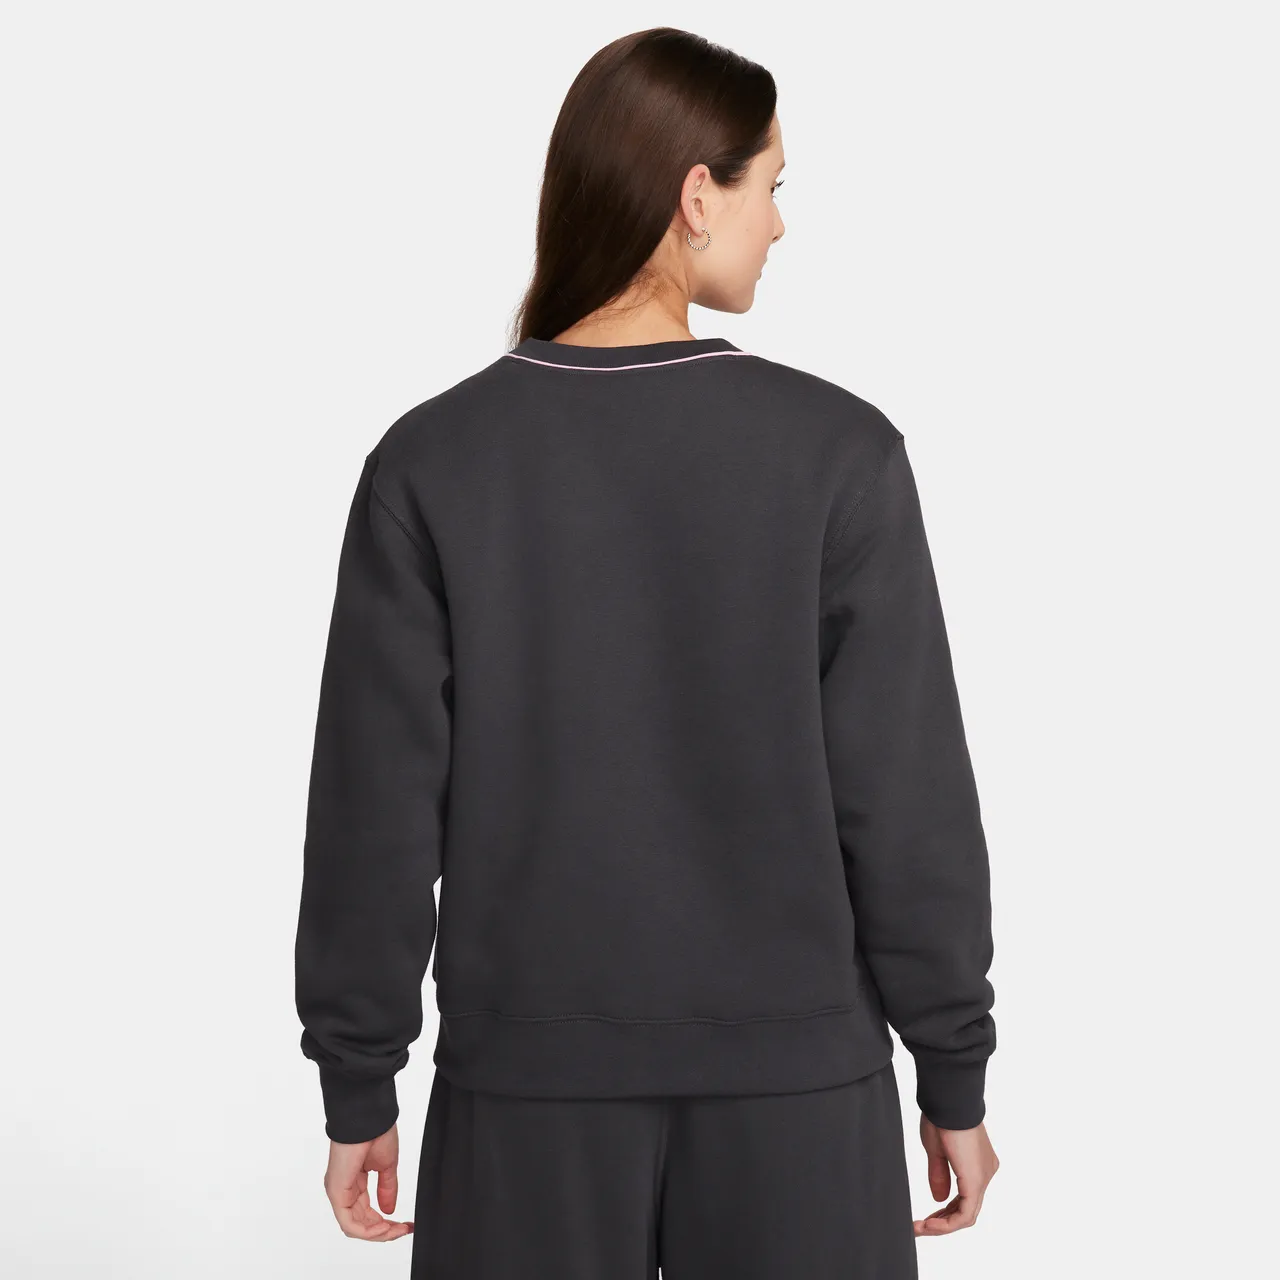 Nike Sportswear Women's Fleece Crew-Neck Sweatshirt - Grey - Polyester